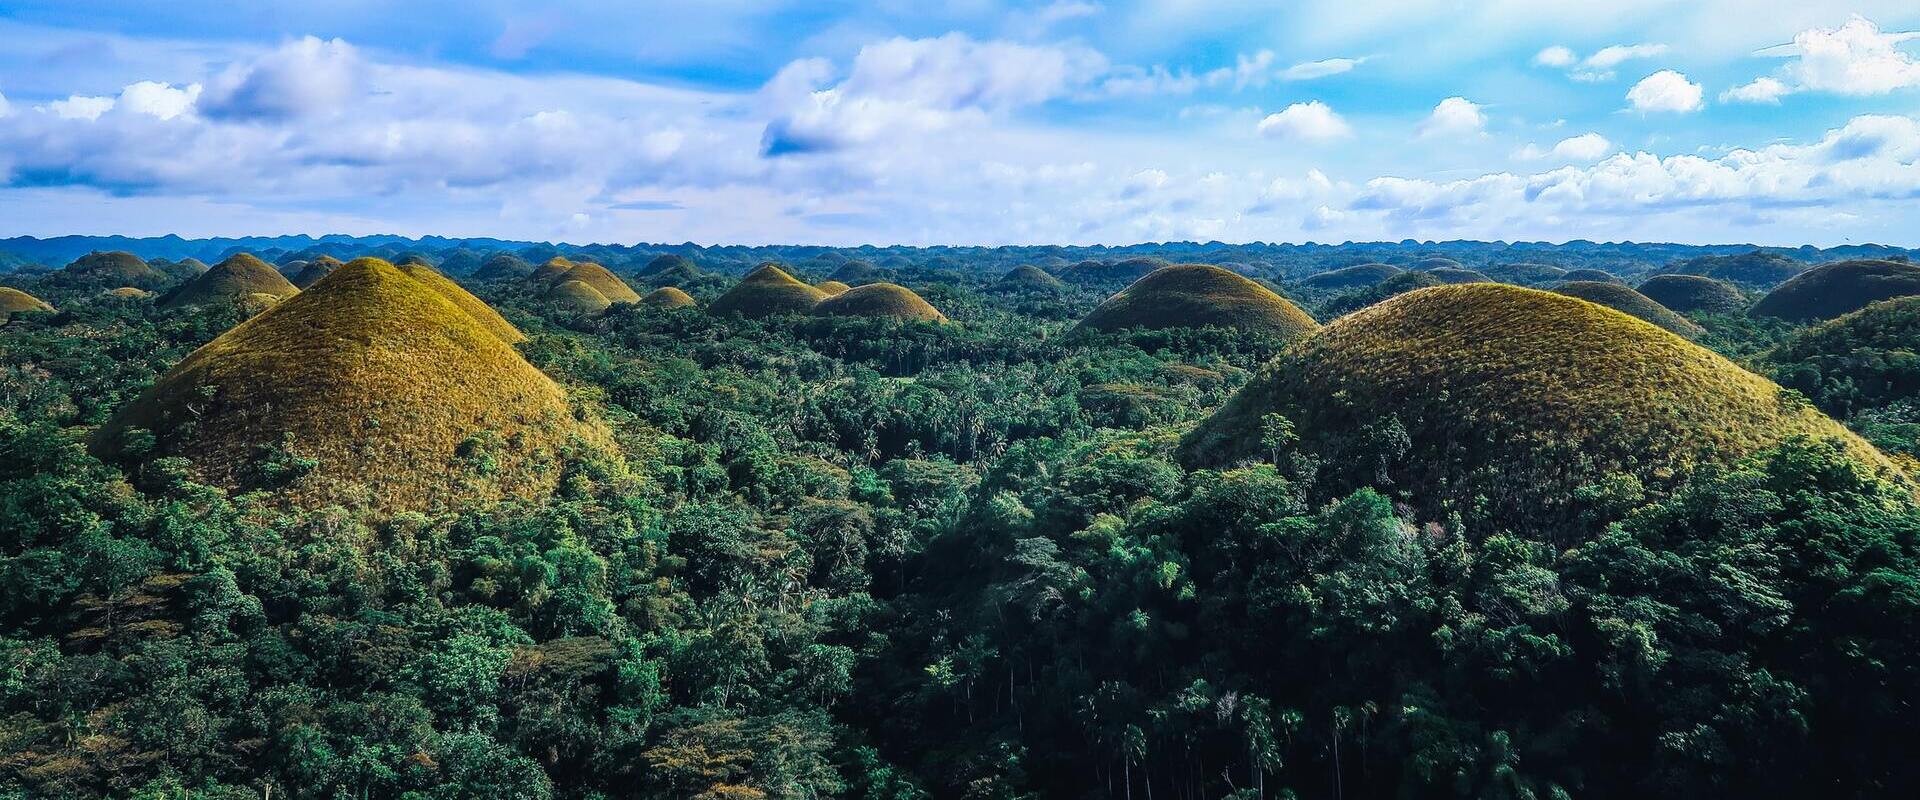 filippine chocolate hills